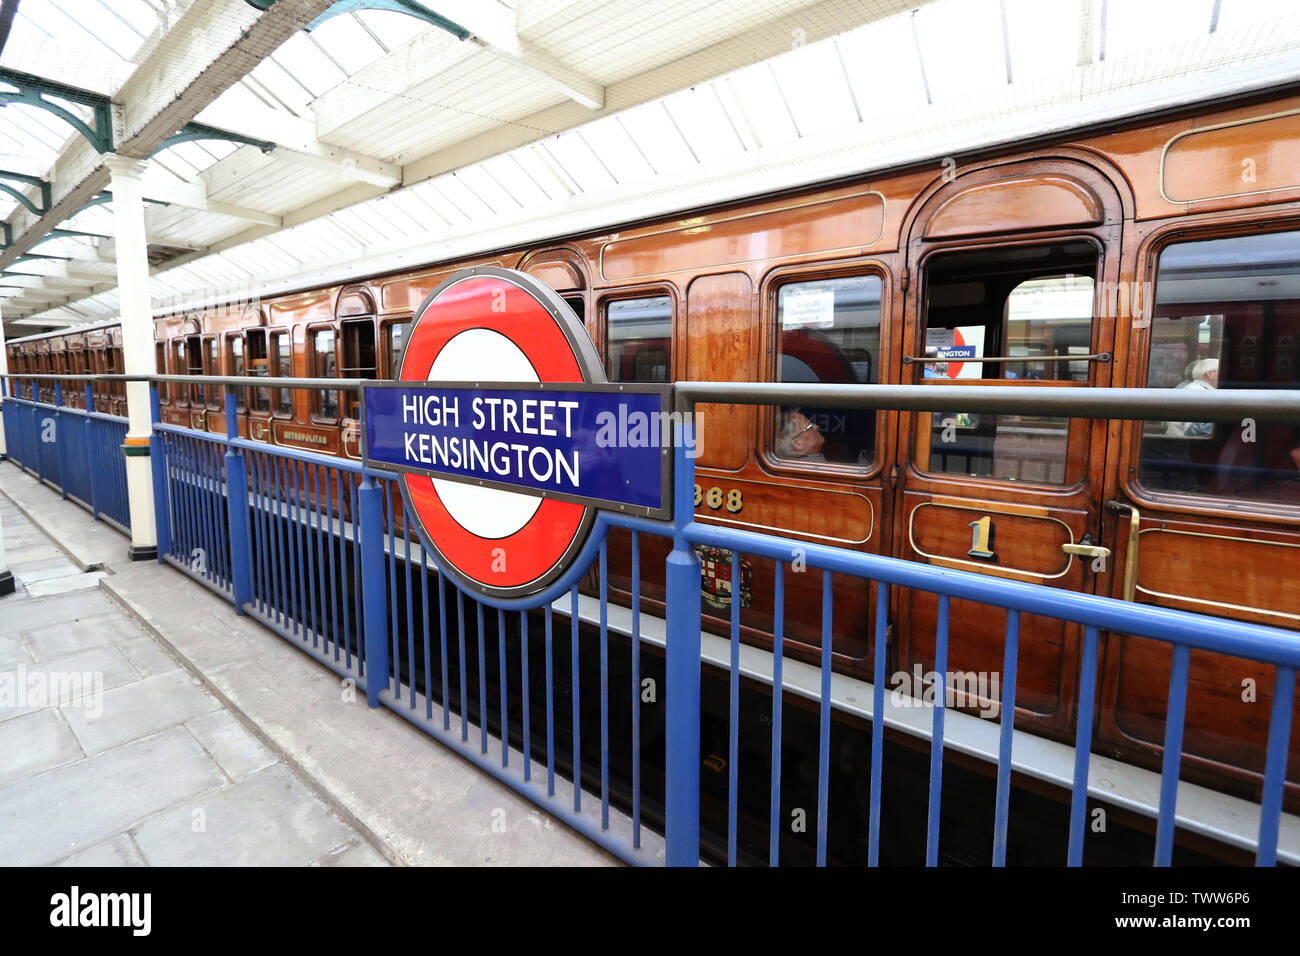 Dans le métro à vapeur 150 District, District Line 150e anniversaire, la station de métro de Kensington High Street, London, UK, 23 juin 2019, Photo par Rich Banque D'Images